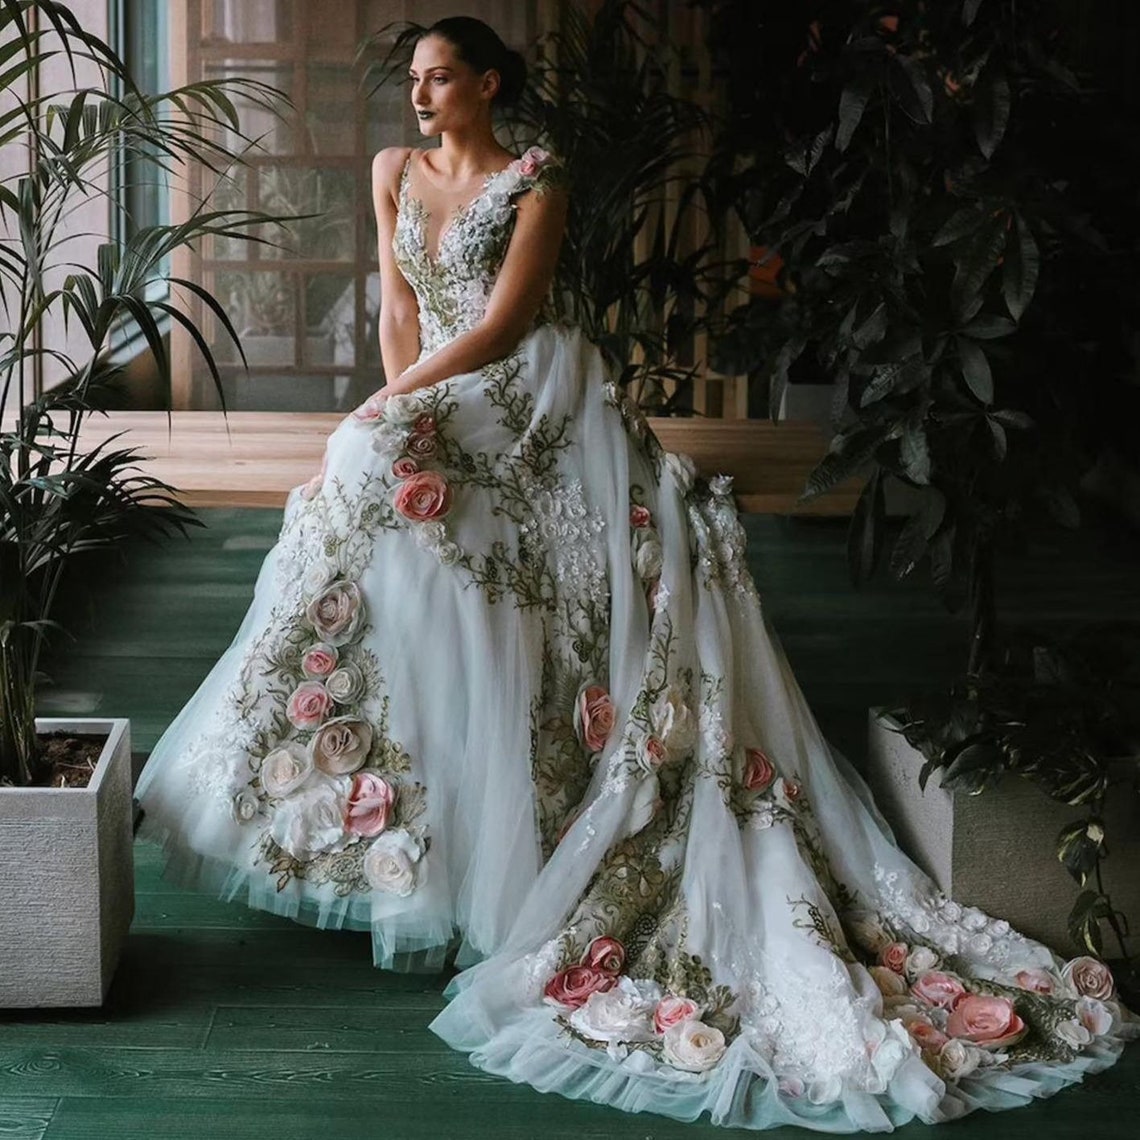 Transparent V-neck Wedding Dress New Design Rose Collection - Etsy